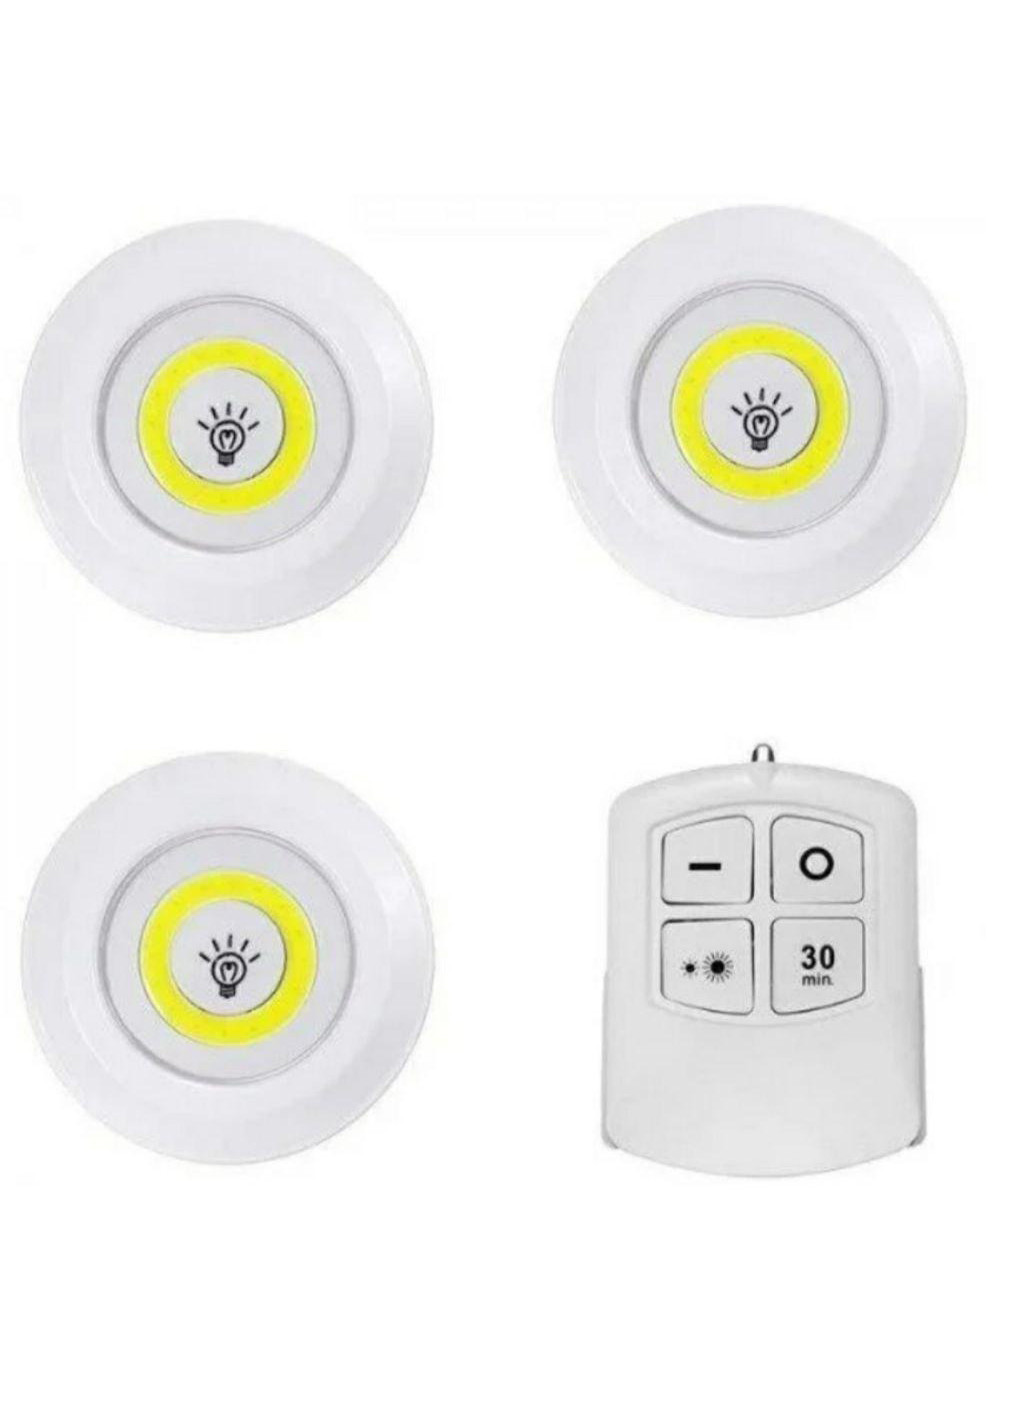 Набор ночников с пультом набор 3 шт LED light with Remote Control set No Brand (261855541)